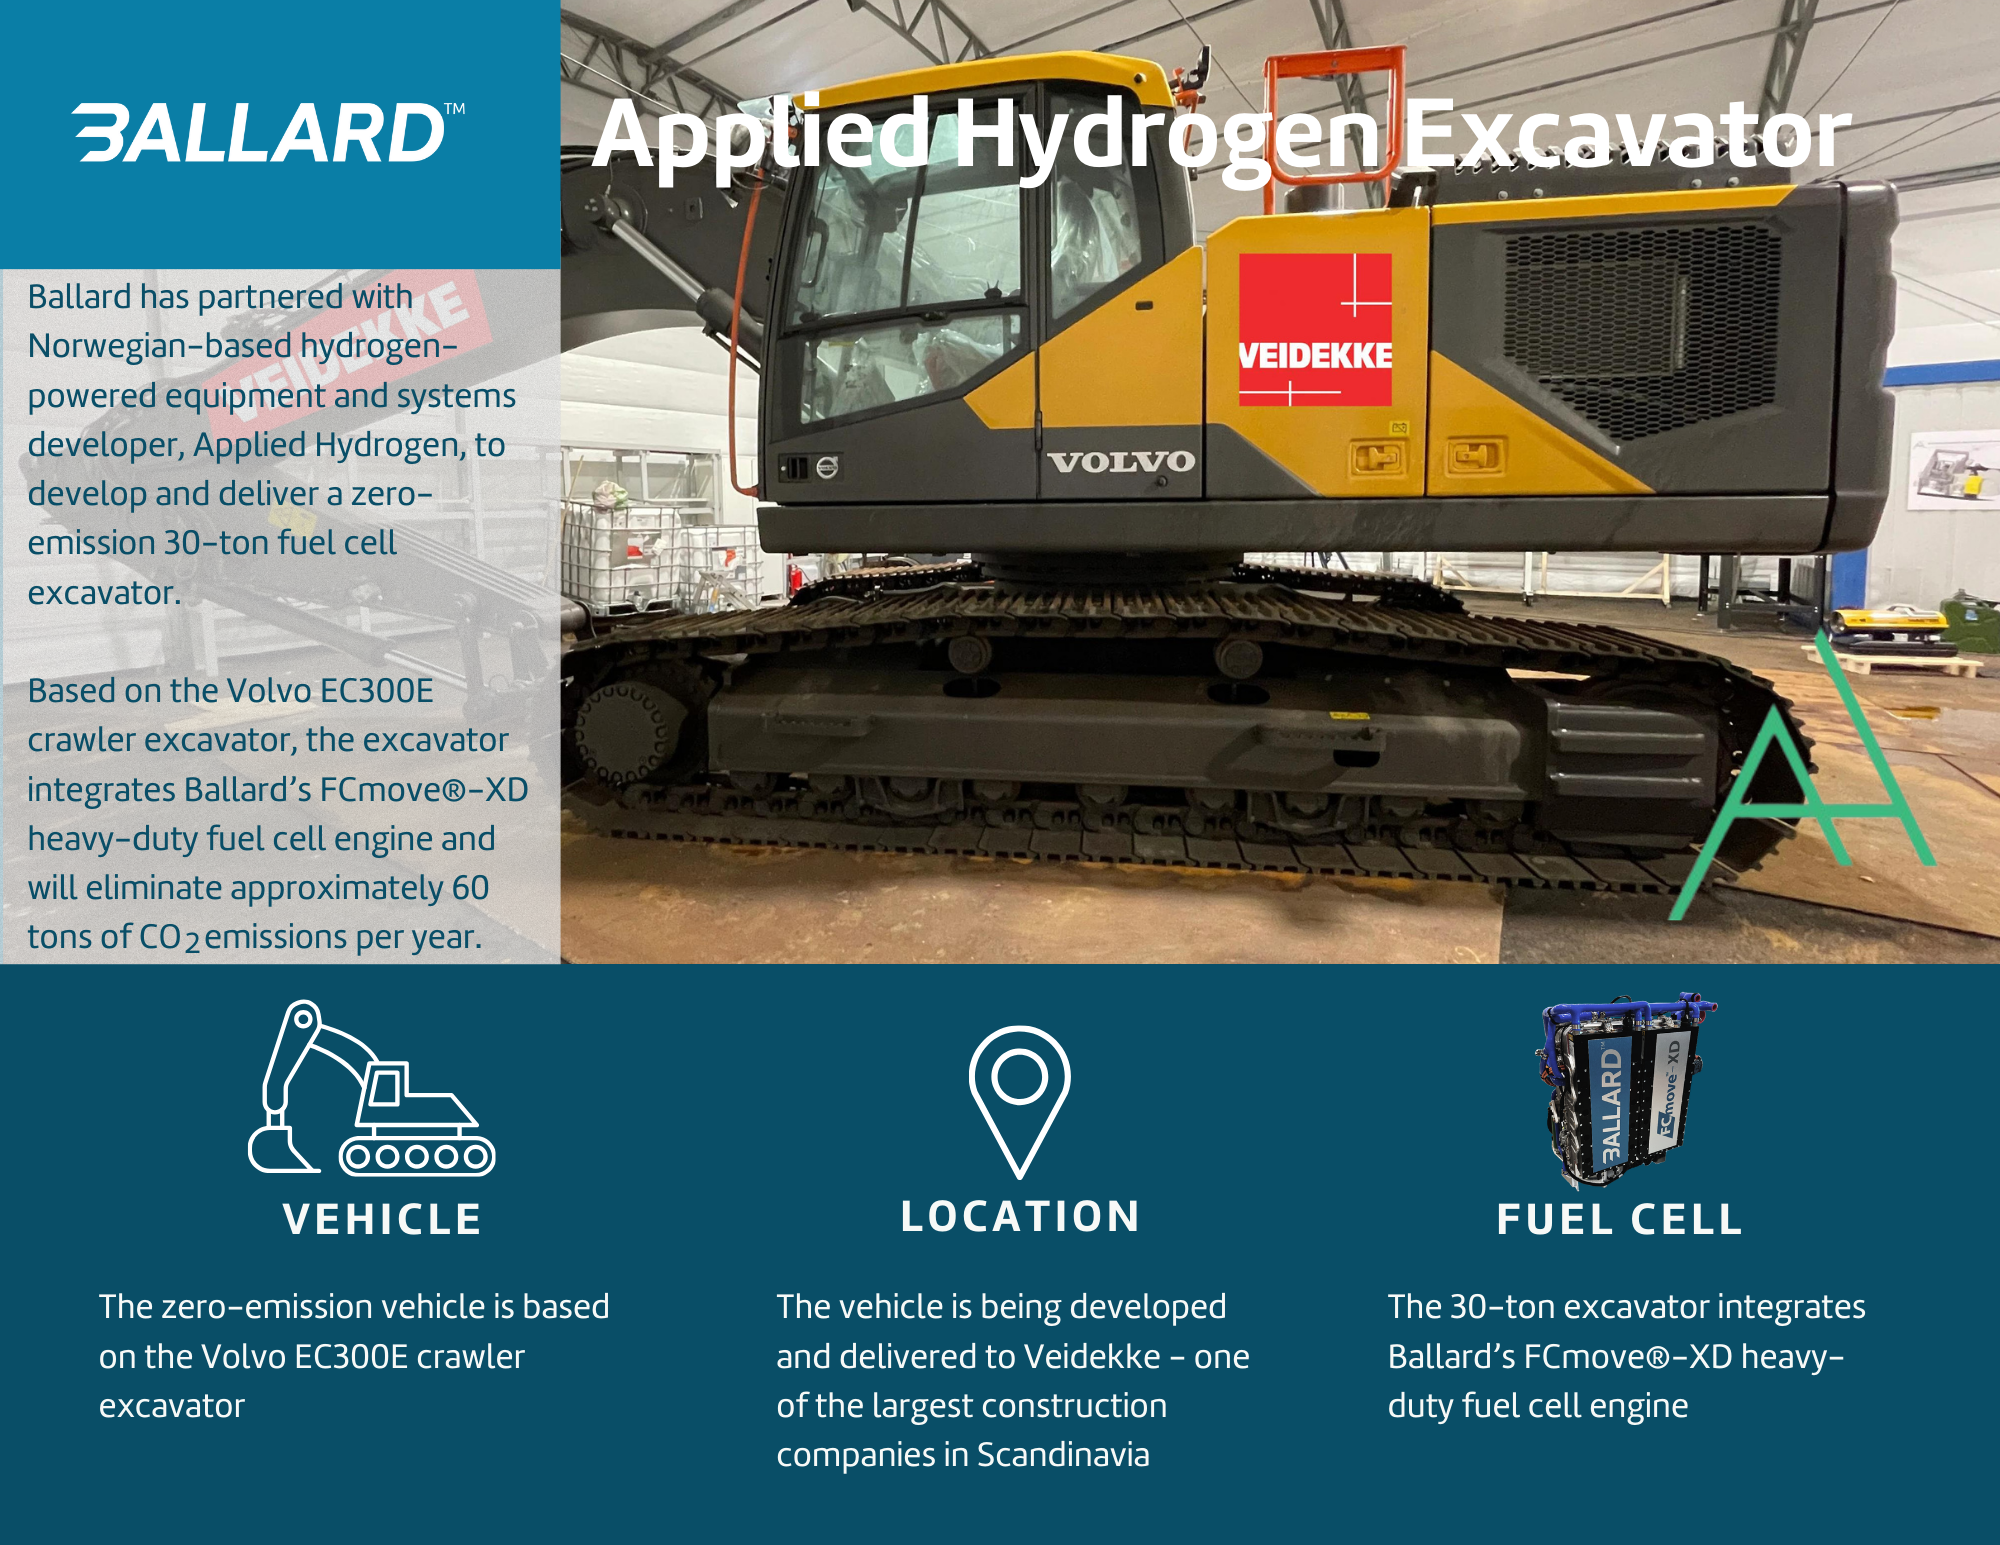 Applied Hydrogen excavator